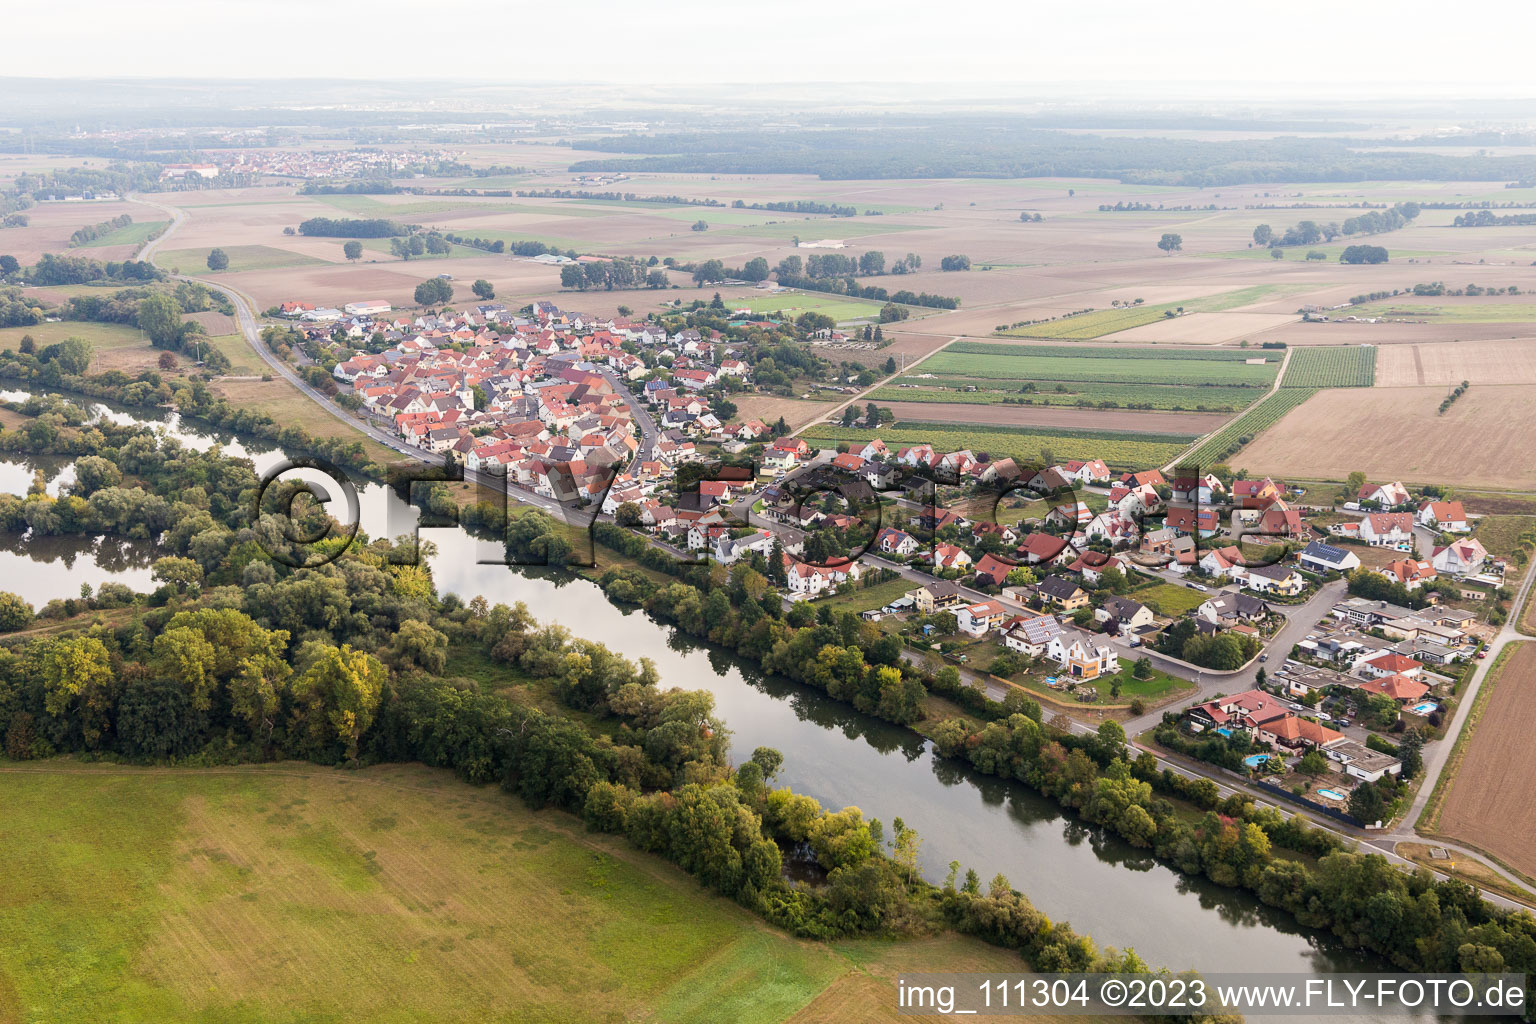 Hirschfeld im Bundesland Bayern, Deutschland aus der Luft betrachtet